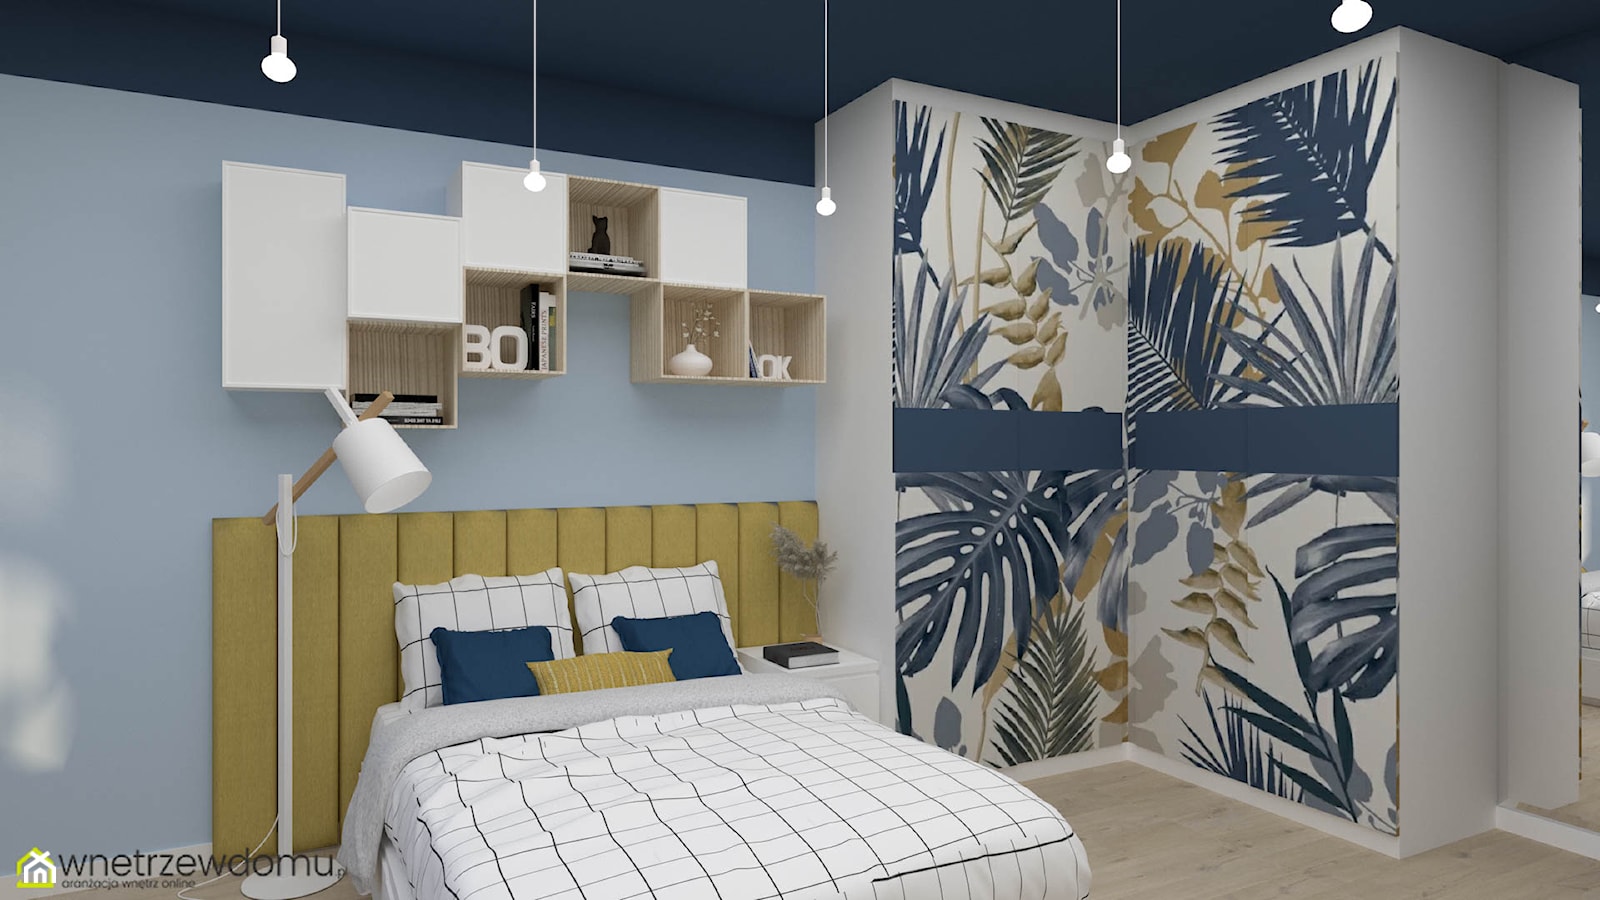 Budżetowa wersja pokoju dla nastolatki uwielbiającej kolor niebieski - zdjęcie od wnetrzewdomu - Homebook